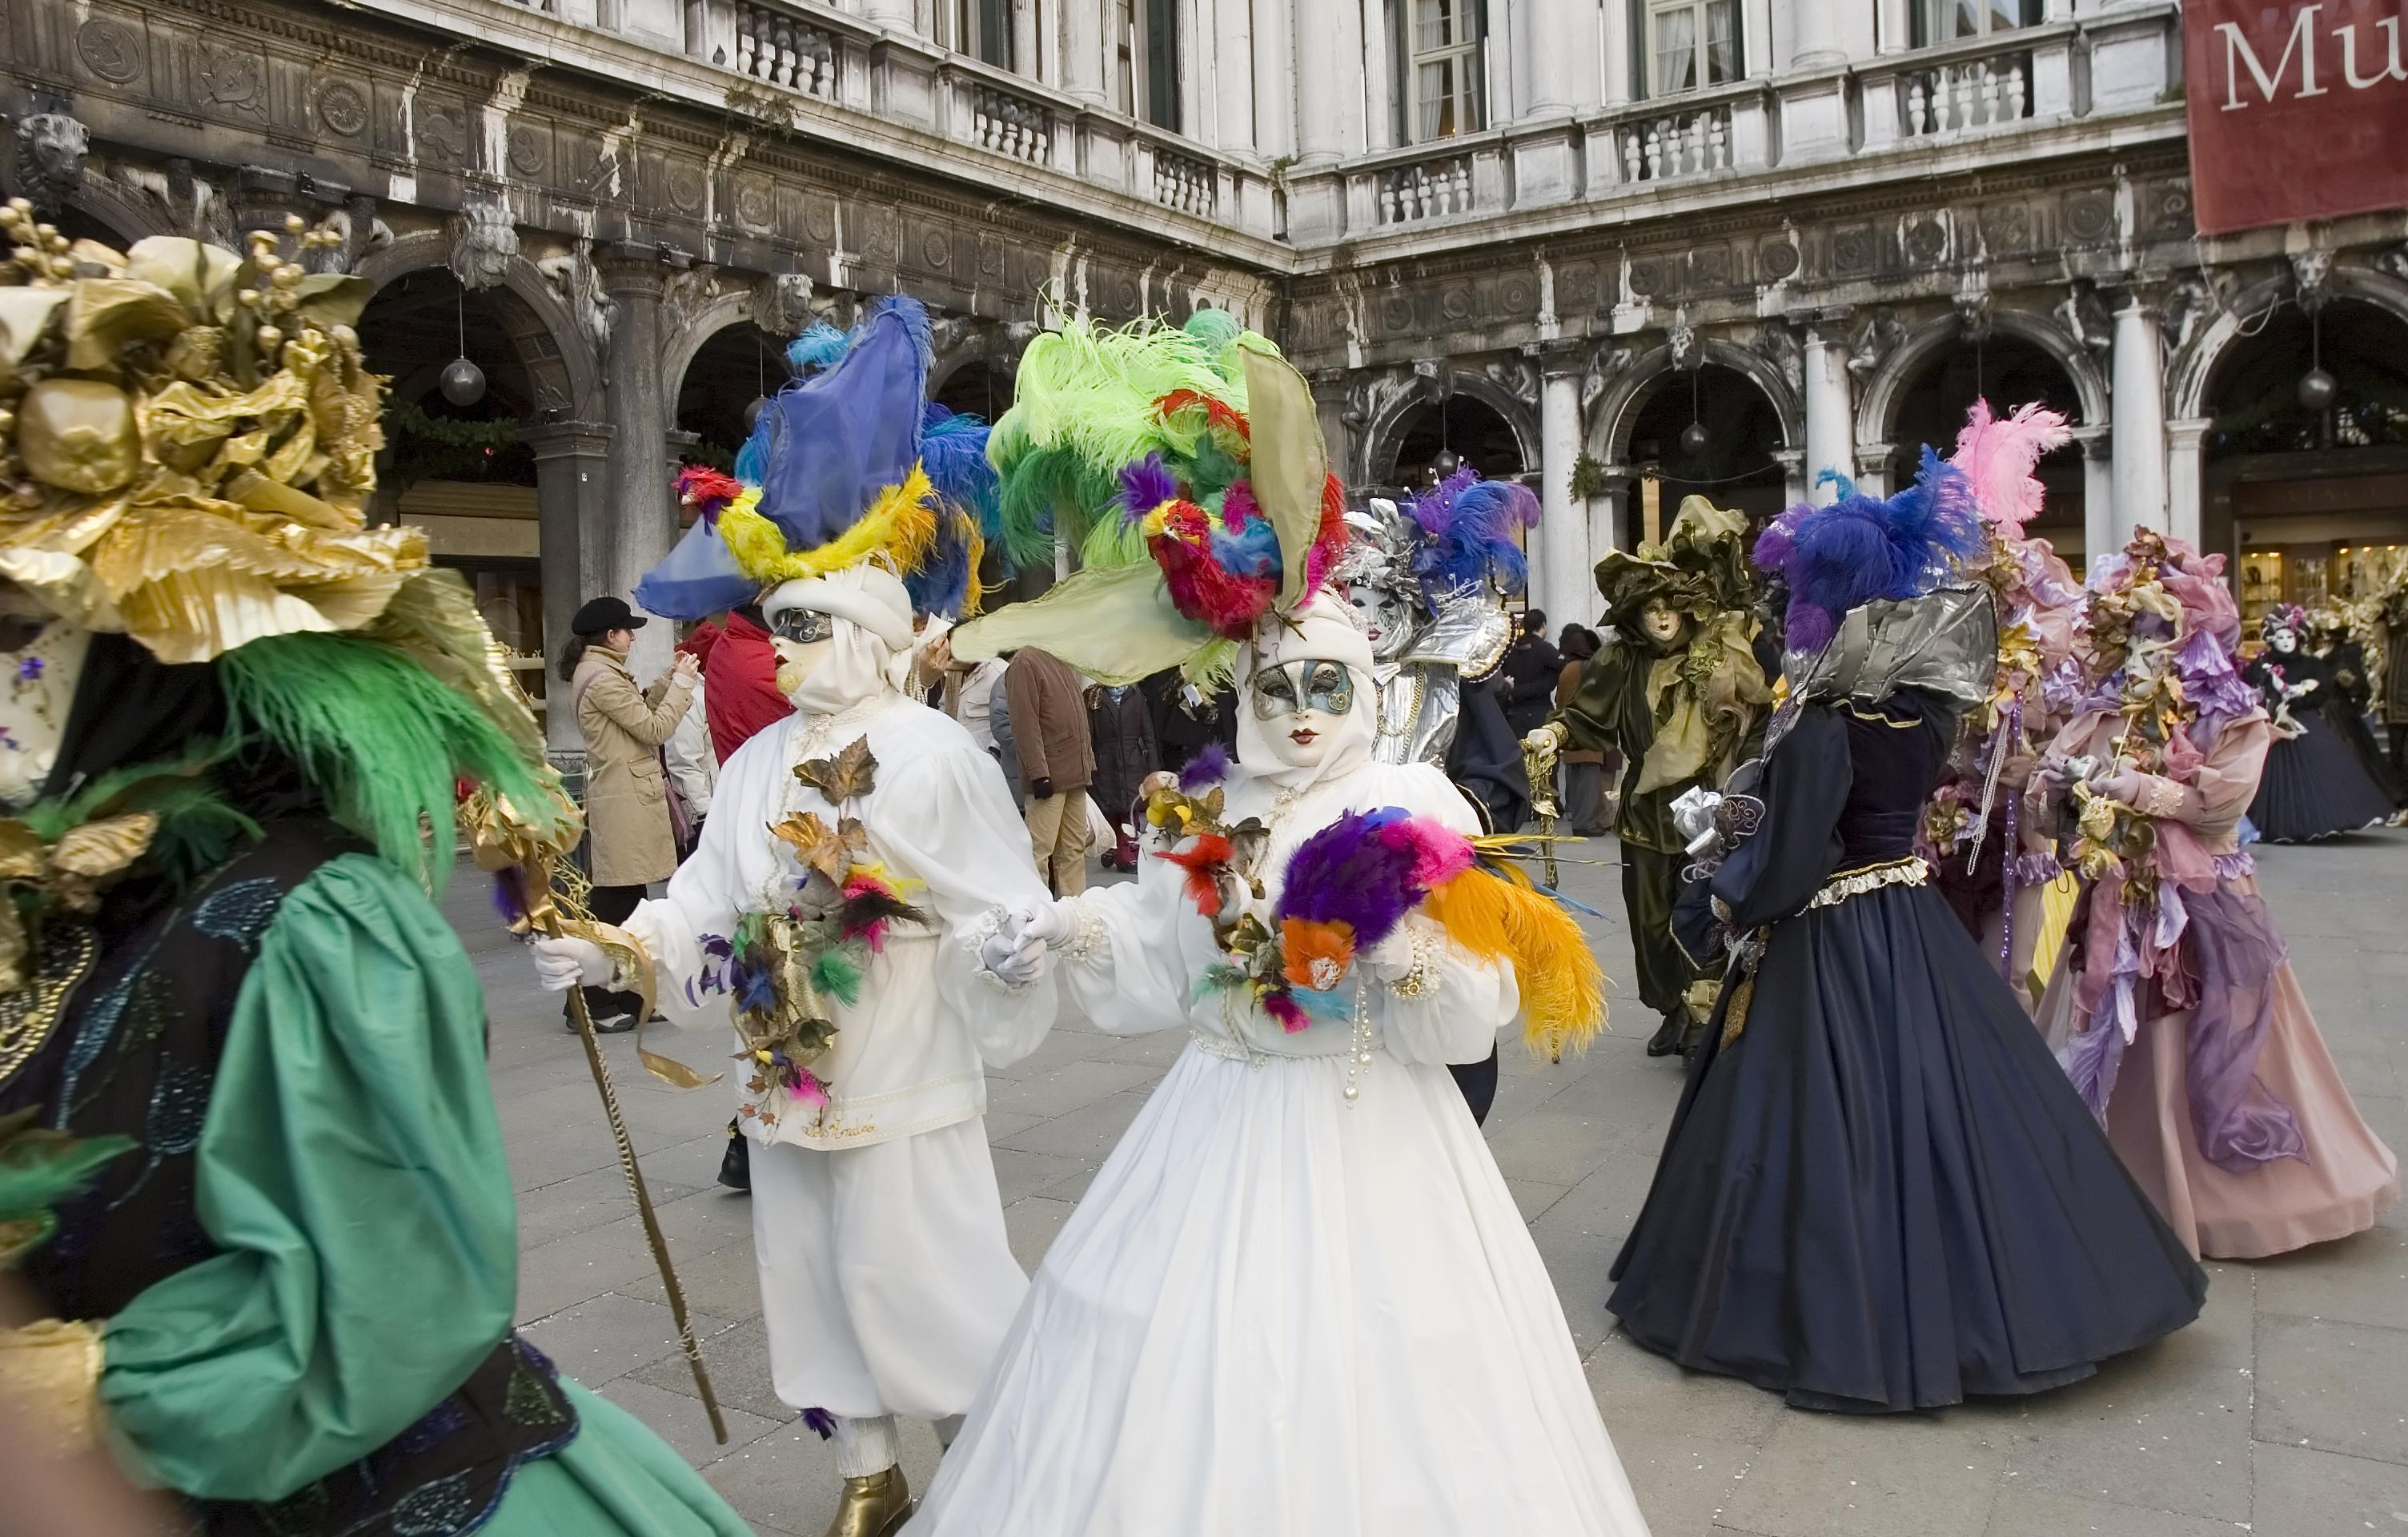 Carnaval de Venise : Location de costume traditionnel, déjeuner spectacle, tour en gondole et parade des costumes